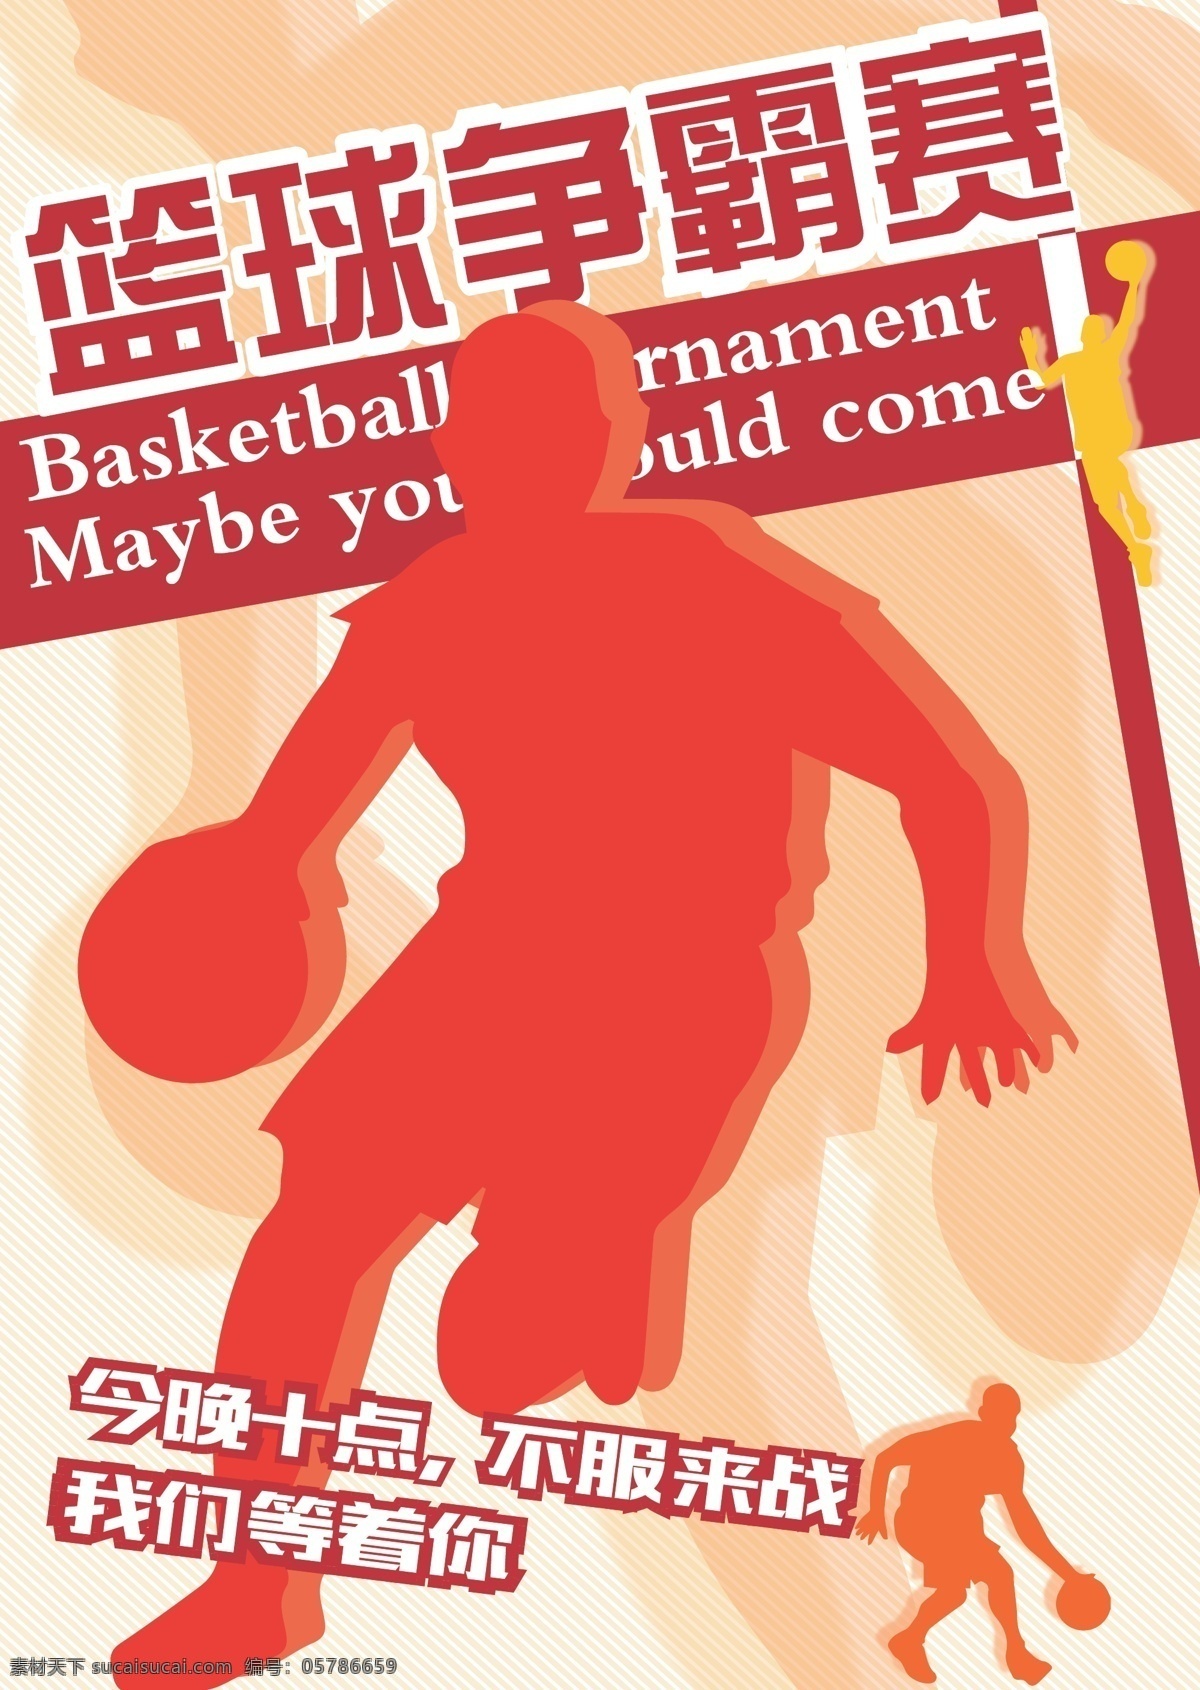 人物剪影 篮球赛 排版 篮球赛海报 招贴 篮球 人矢量图 剪影 矢量